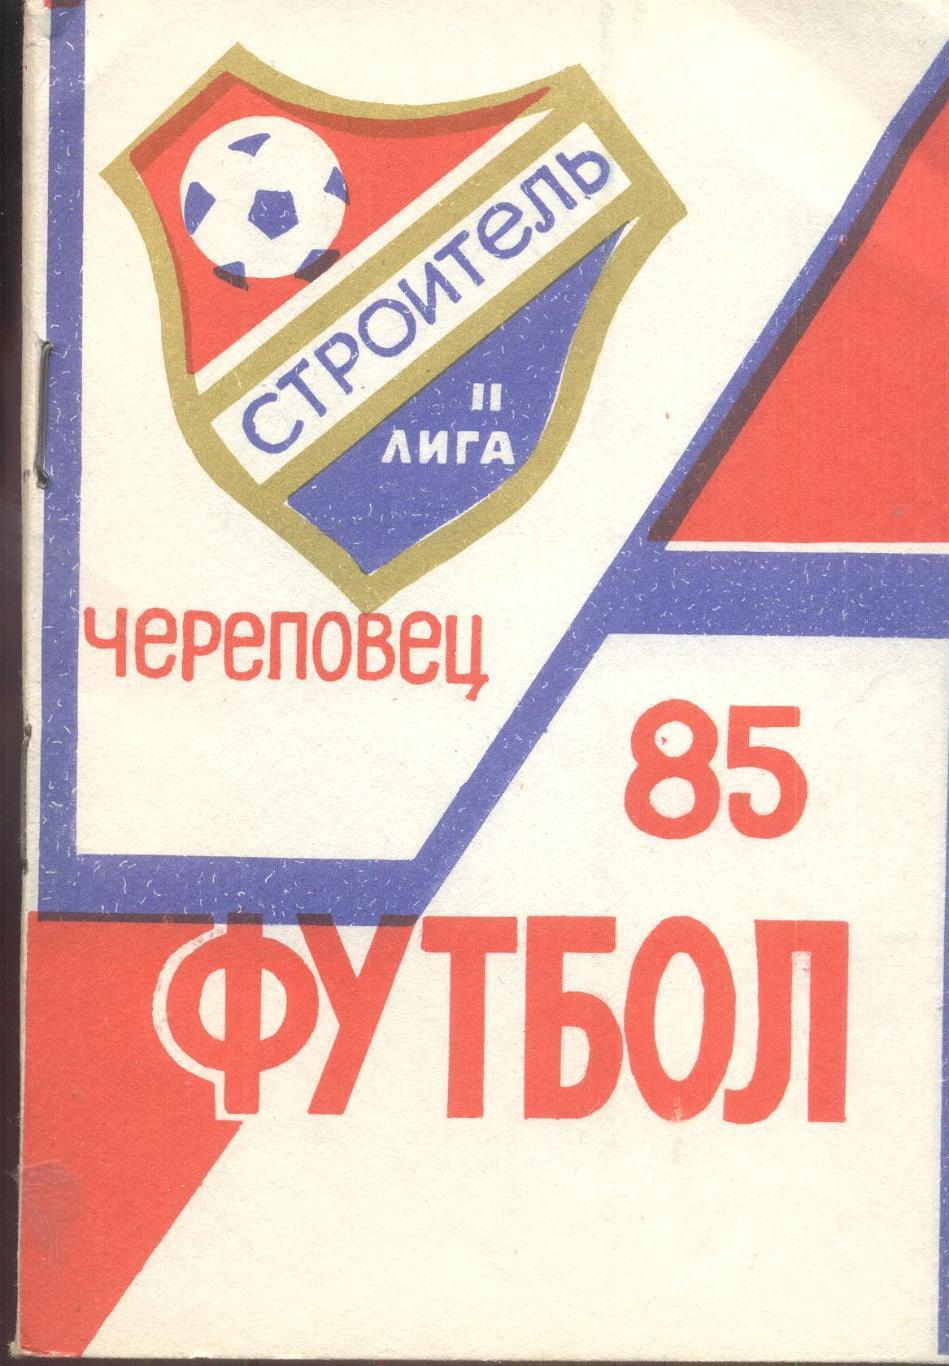 РАСПРОДАЖА к/с череповец 1985